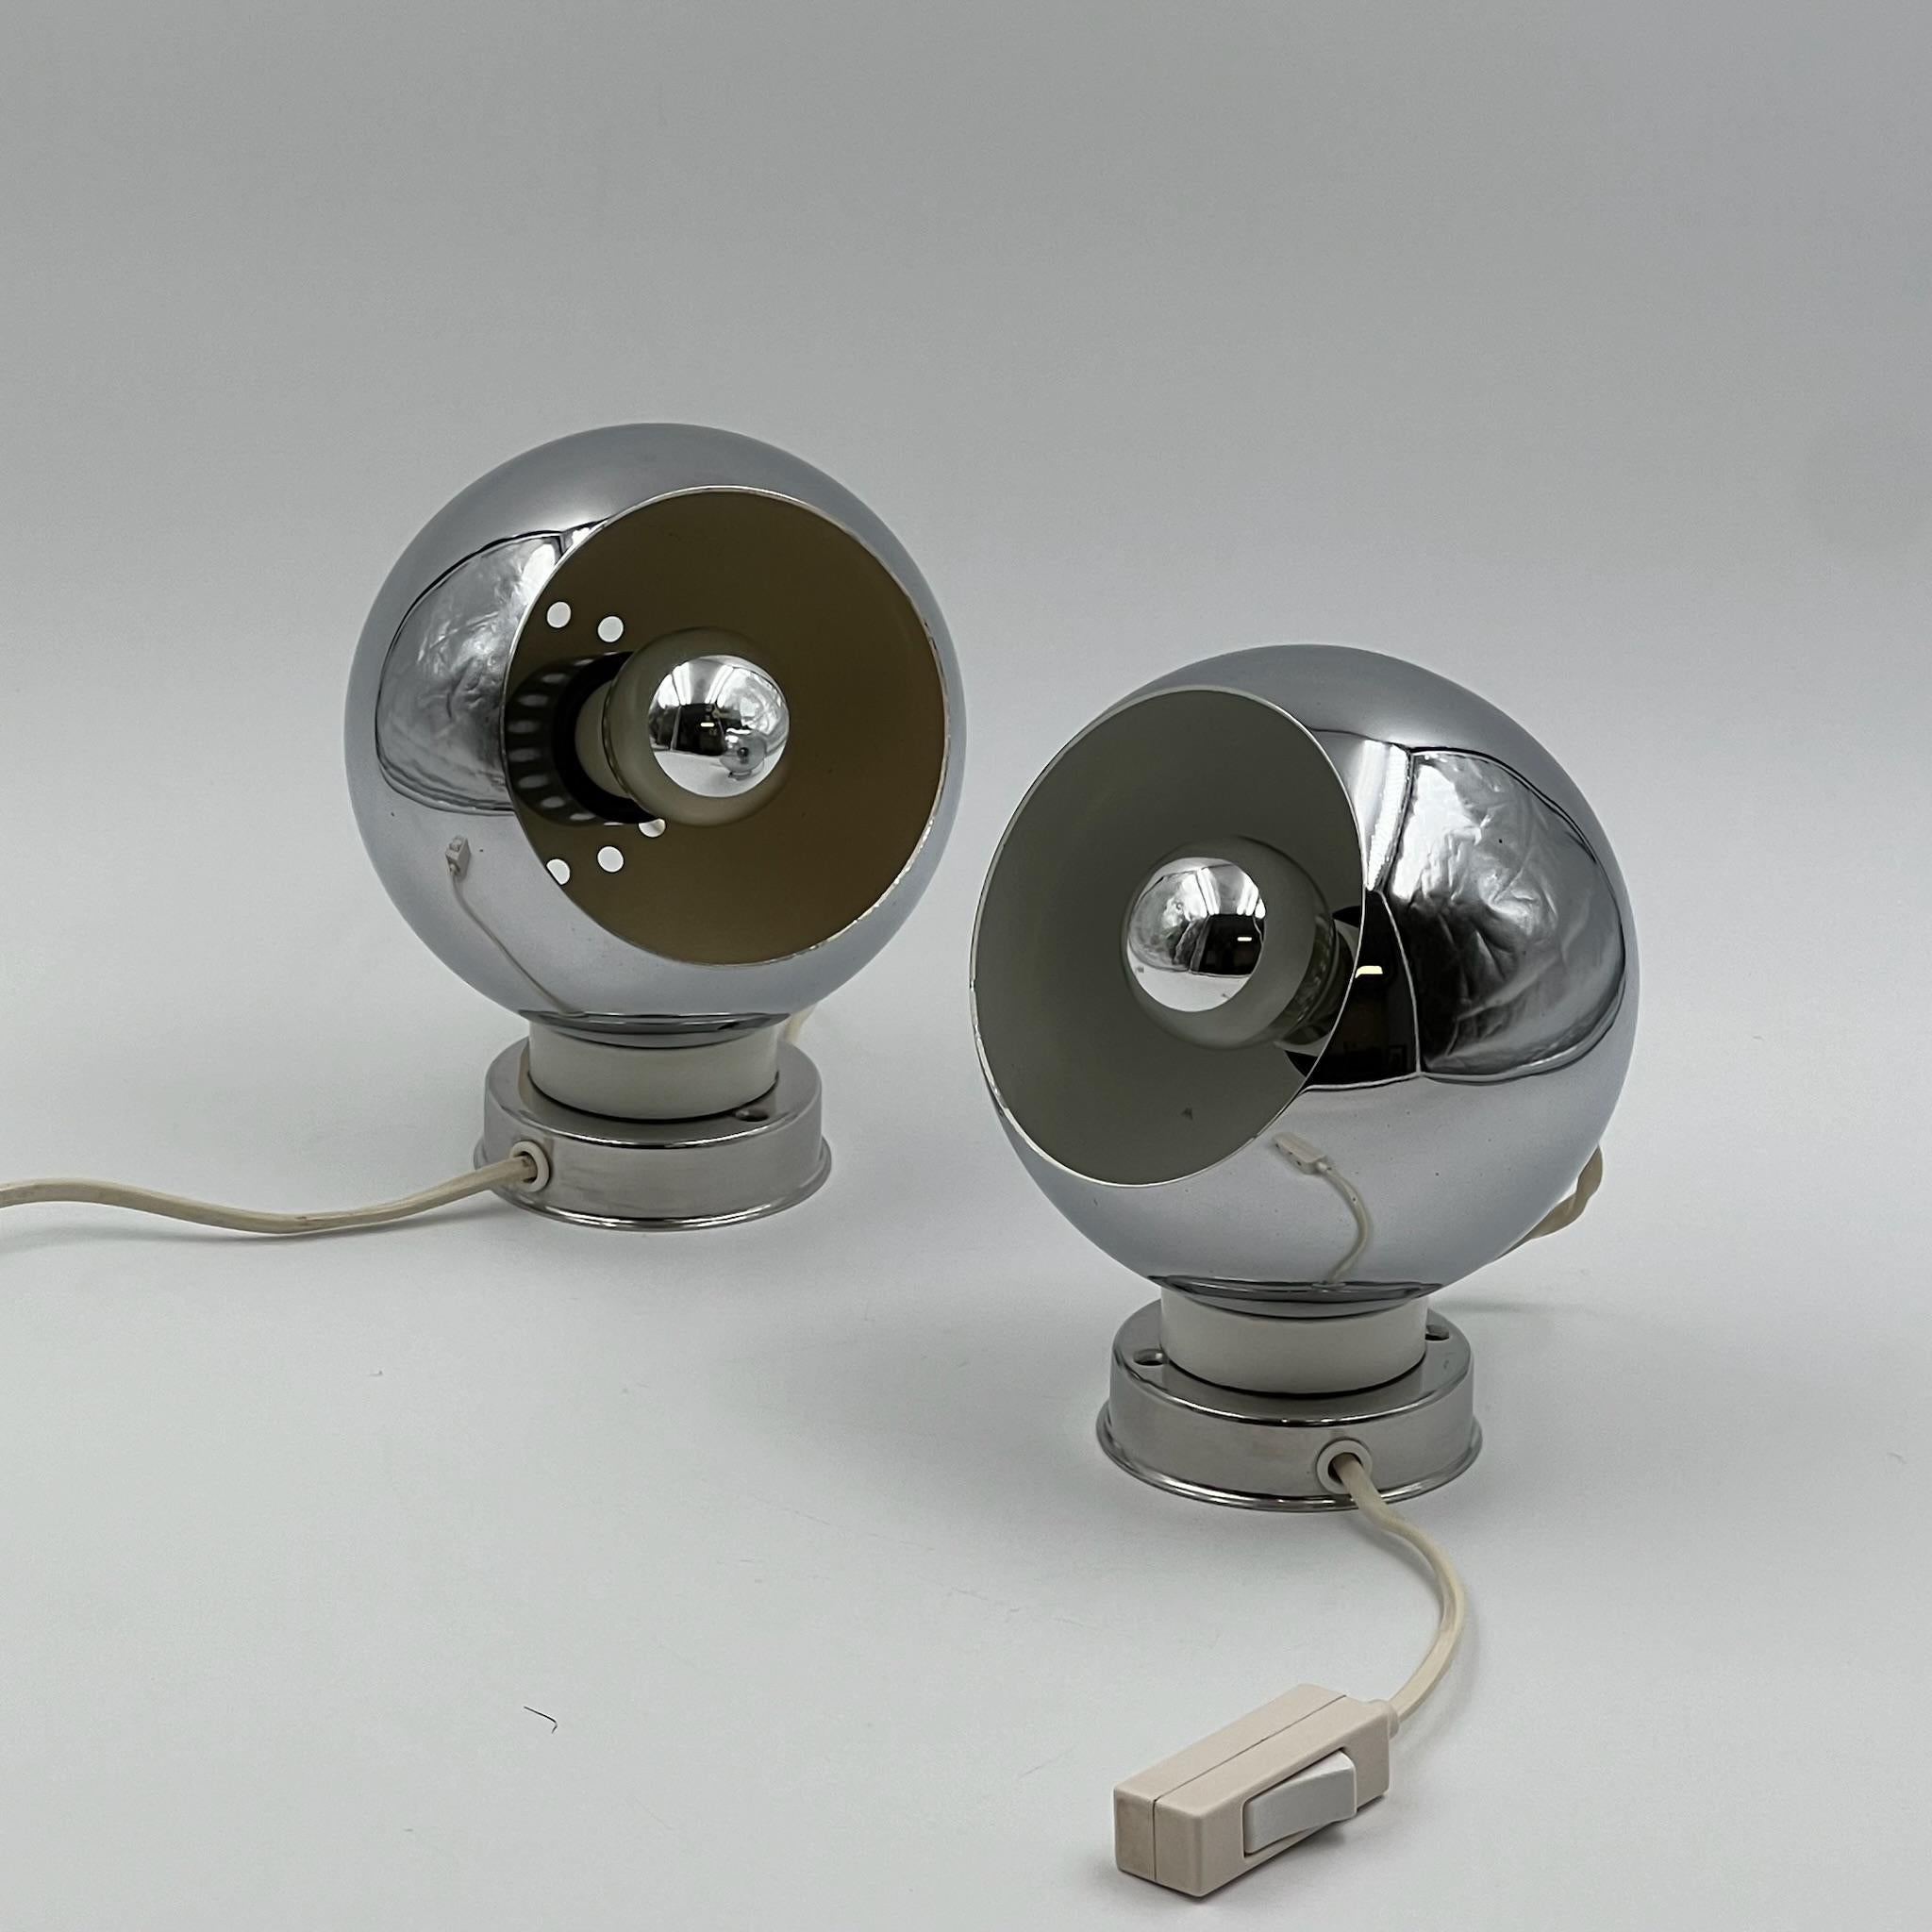 Ikonische Reggiani-Lampen „Eyeball“ 60er Jahre - Paar Vintage-Meisterwerke - 2er-Set (Space Age)